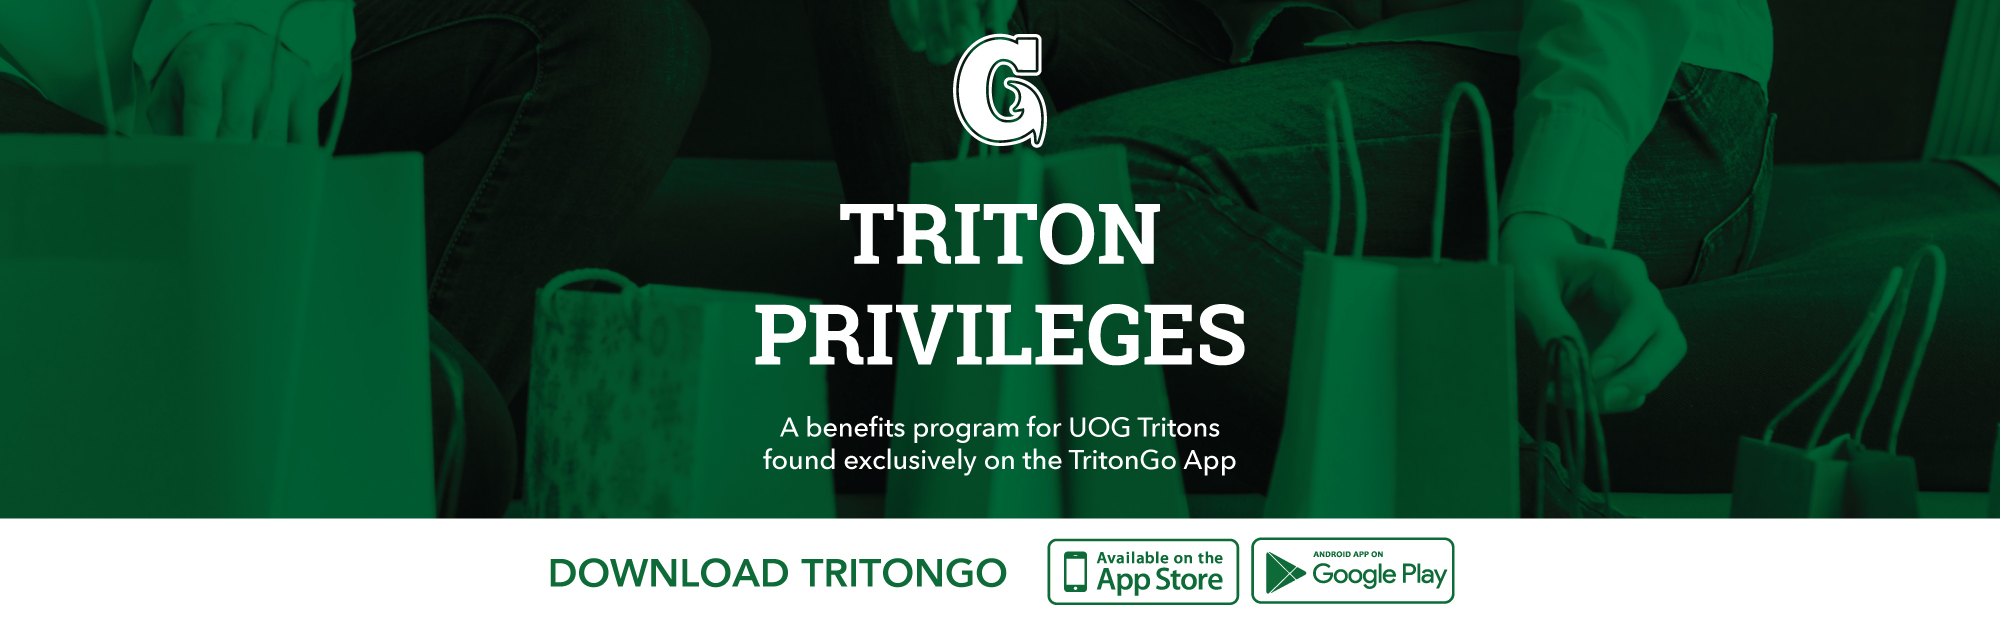 Triton Privileges